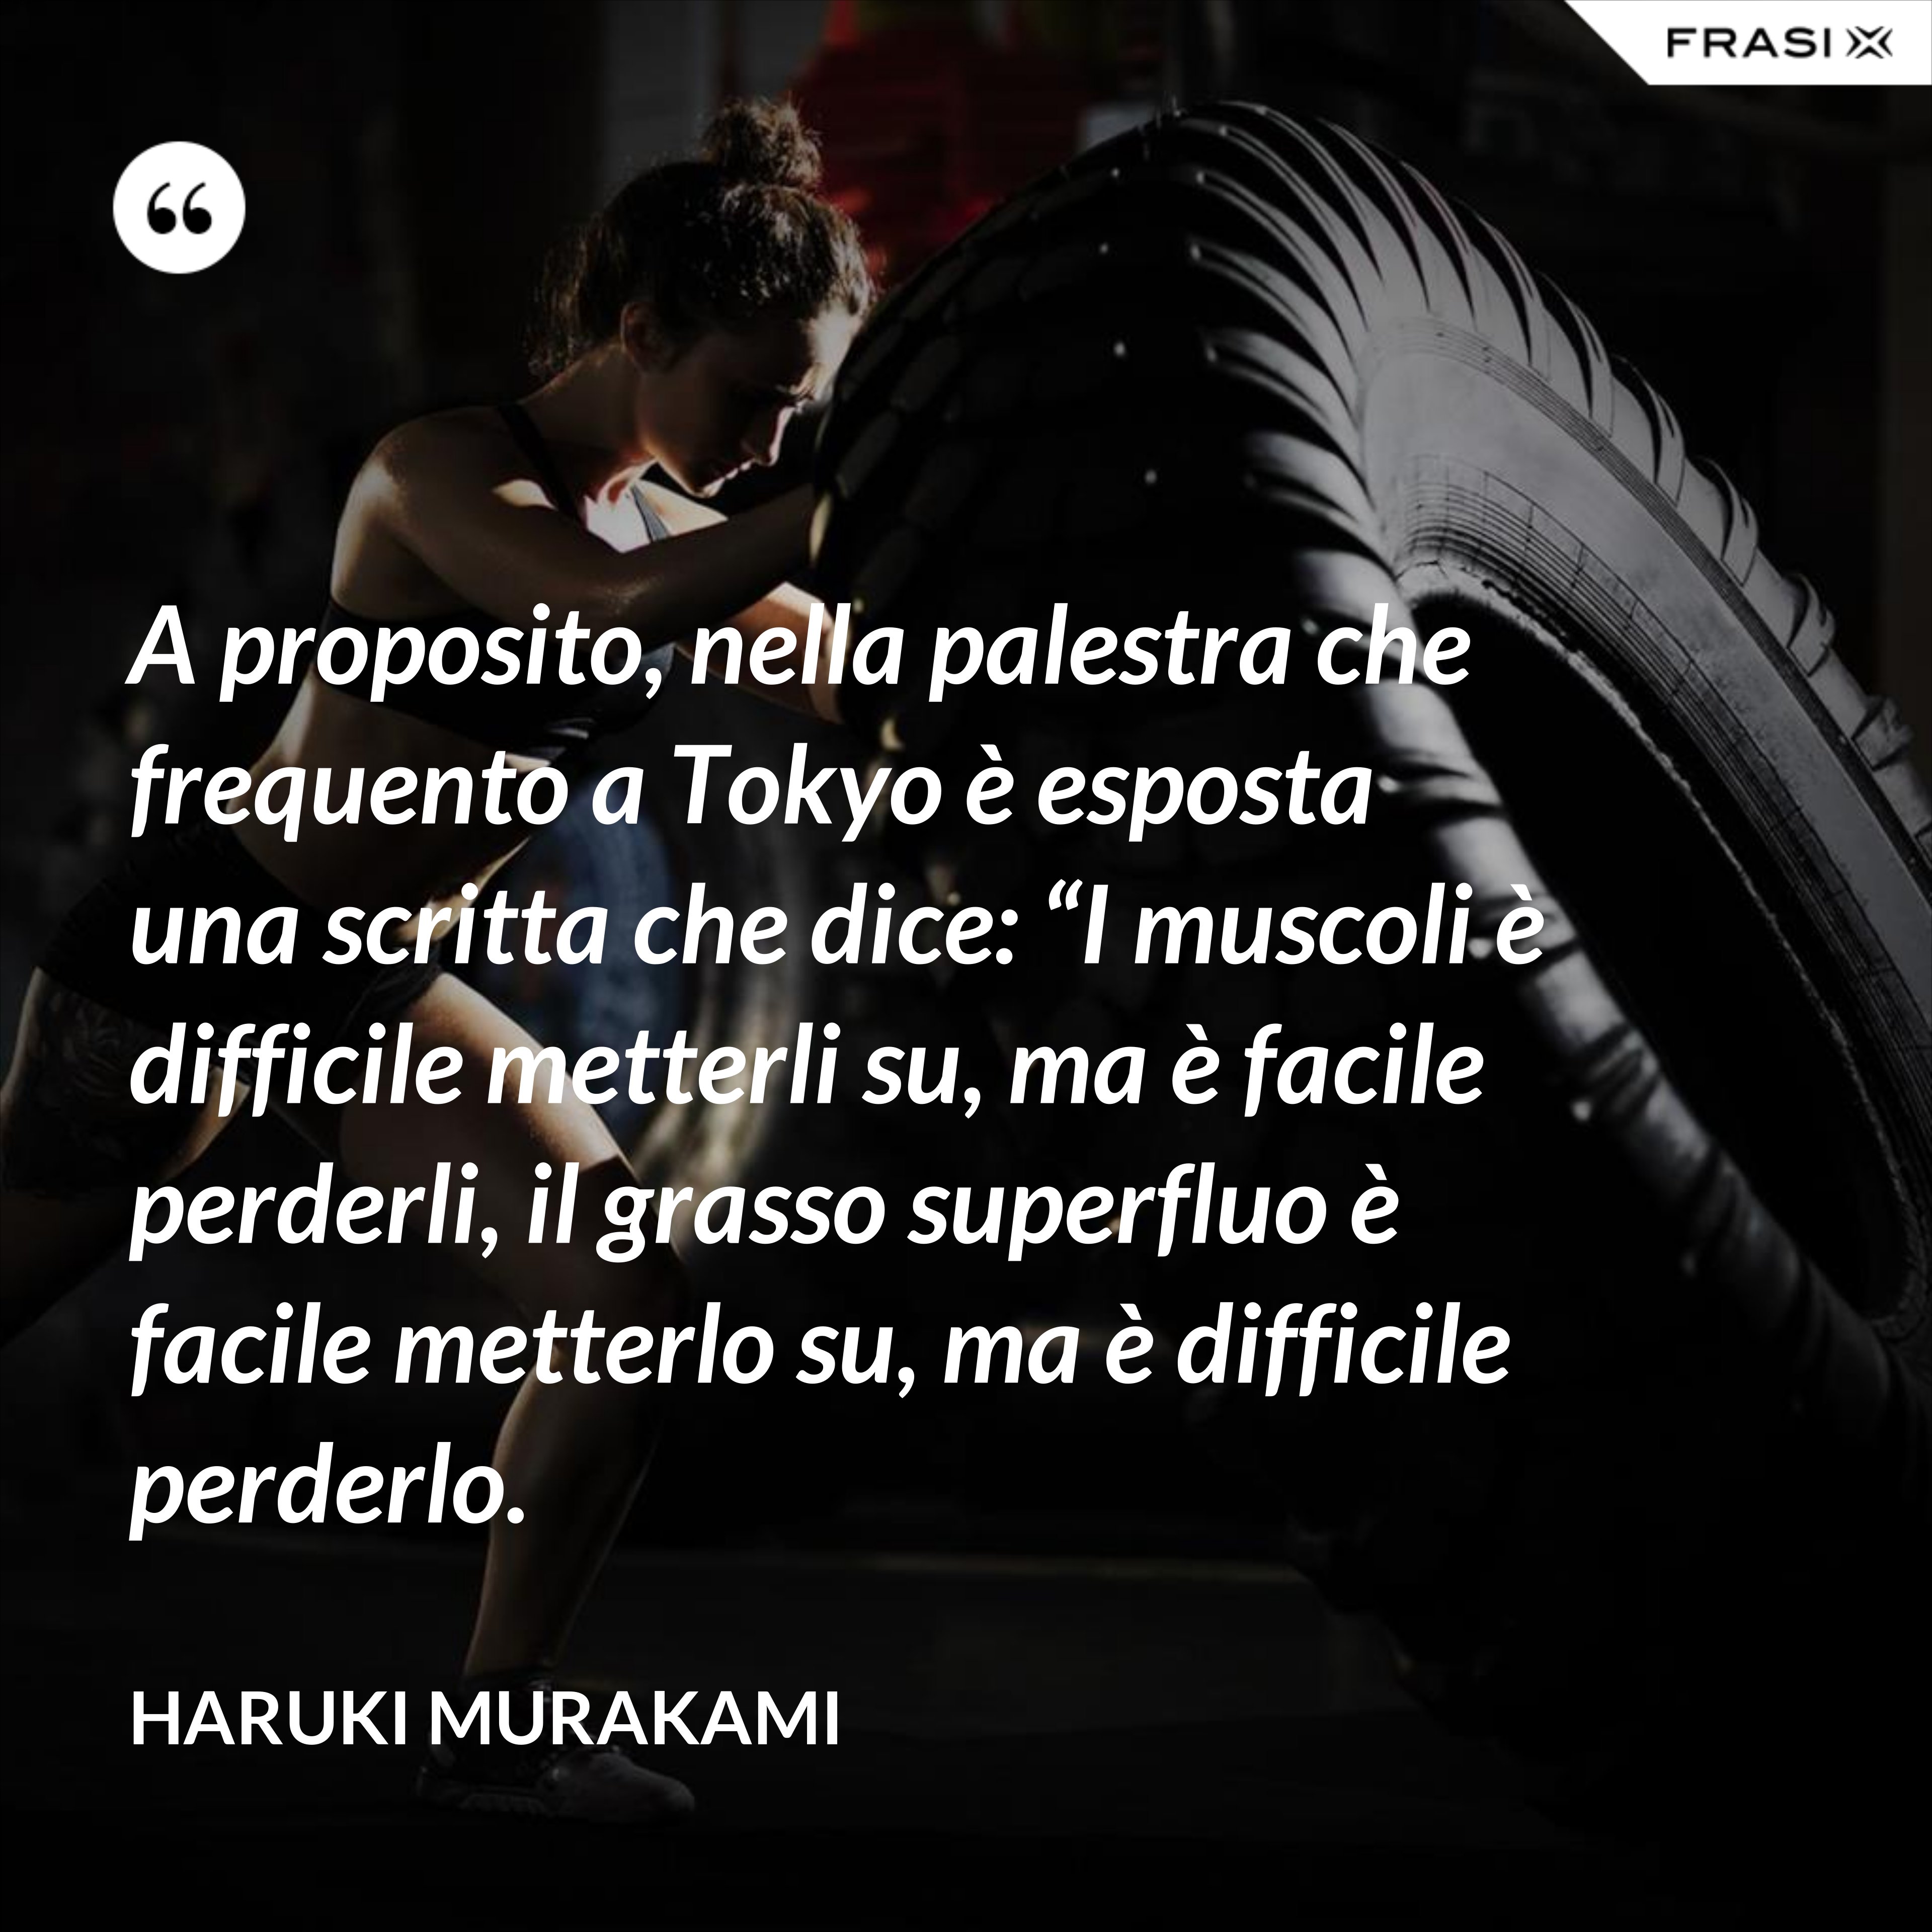 A proposito, nella palestra che frequento a Tokyo è esposta una scritta che dice: “I muscoli è difficile metterli su, ma è facile perderli, il grasso superfluo è facile metterlo su, ma è difficile perderlo. - Haruki Murakami